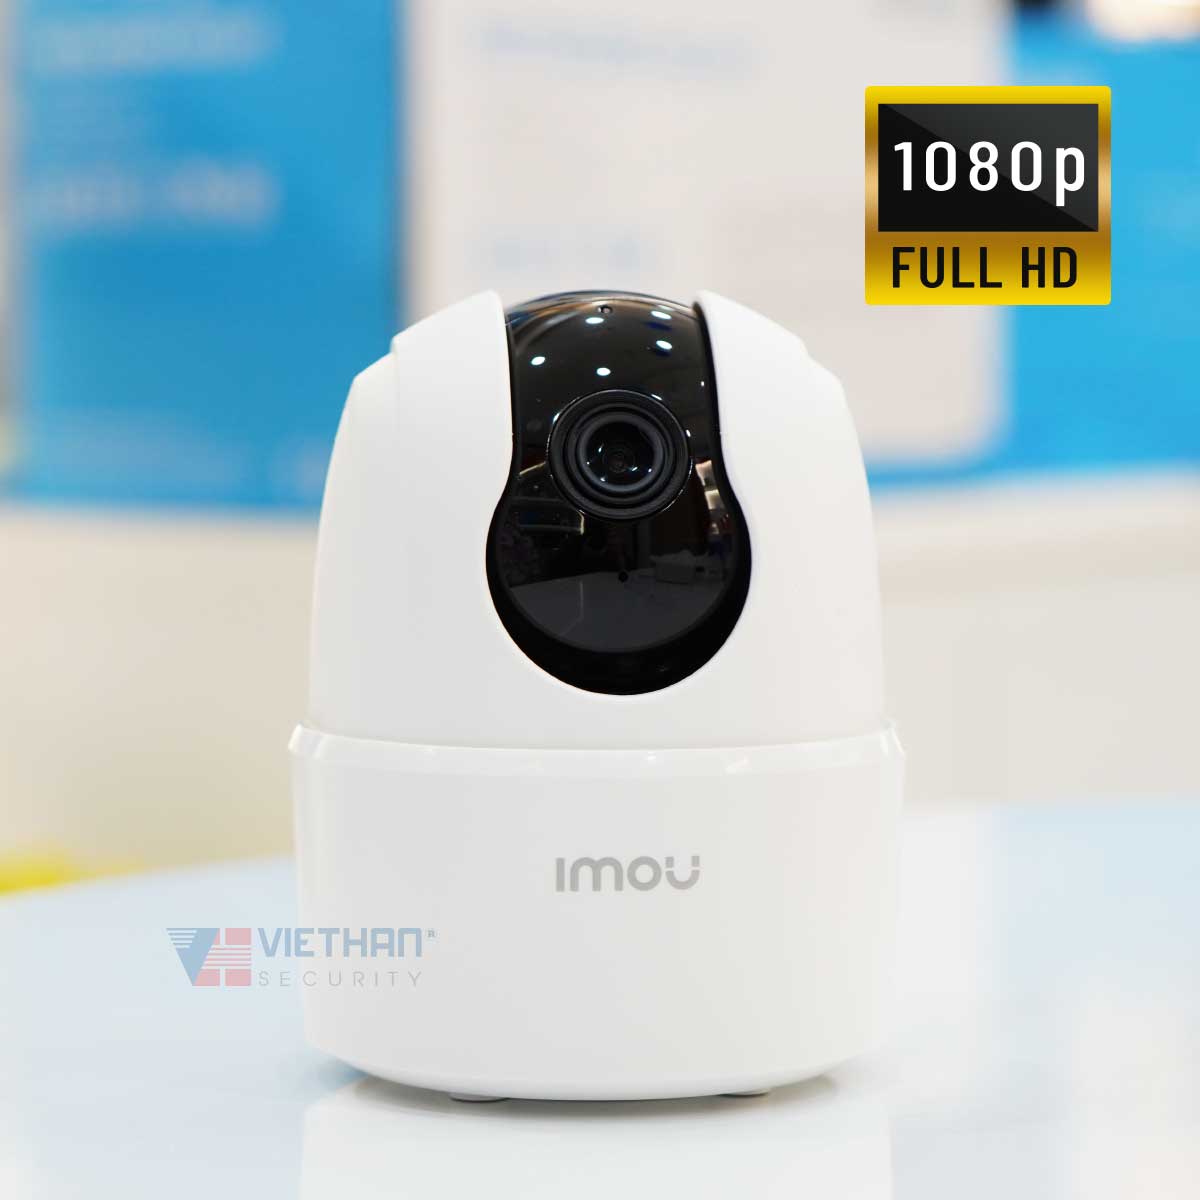 Camera Imou Ranger 2C IPC-TA22CP-D 2MP 1080P, wifi không dây tích hợp mic và loa